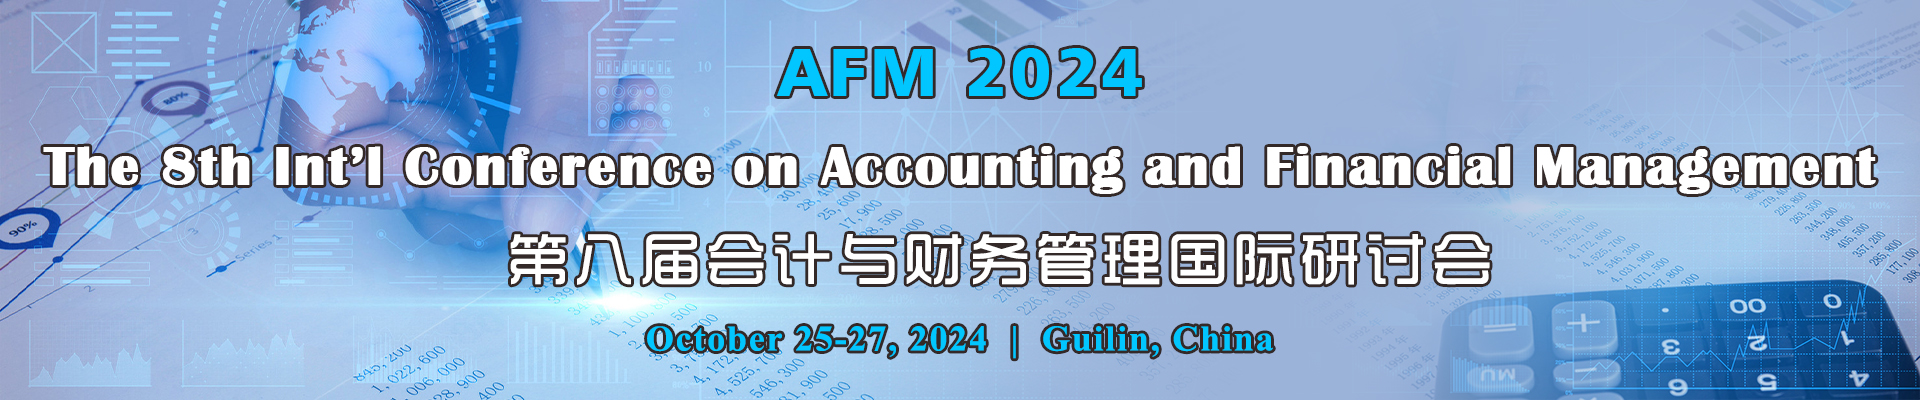 第八届会计与财务管理国际研讨会 (AFM 2024)